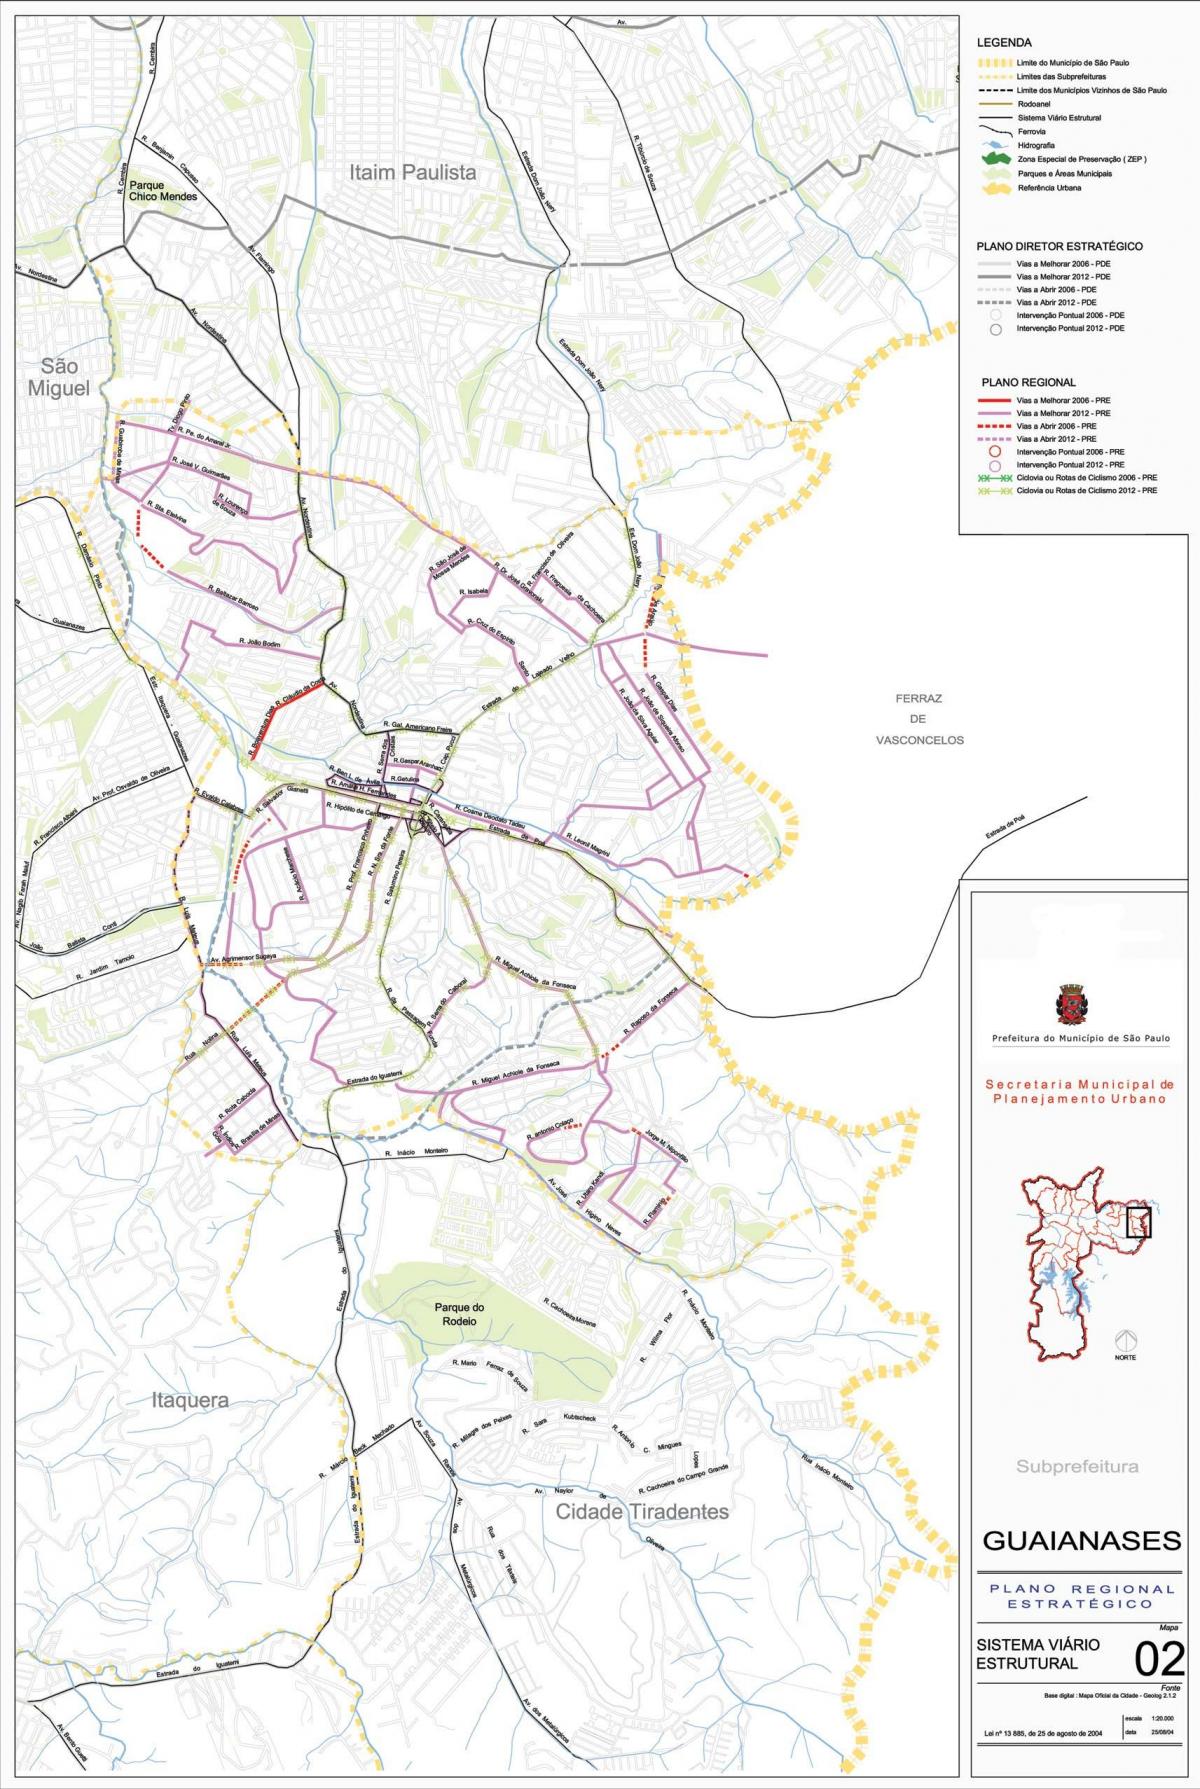 Mapa ng Guaianases São Paulo - Kalsada